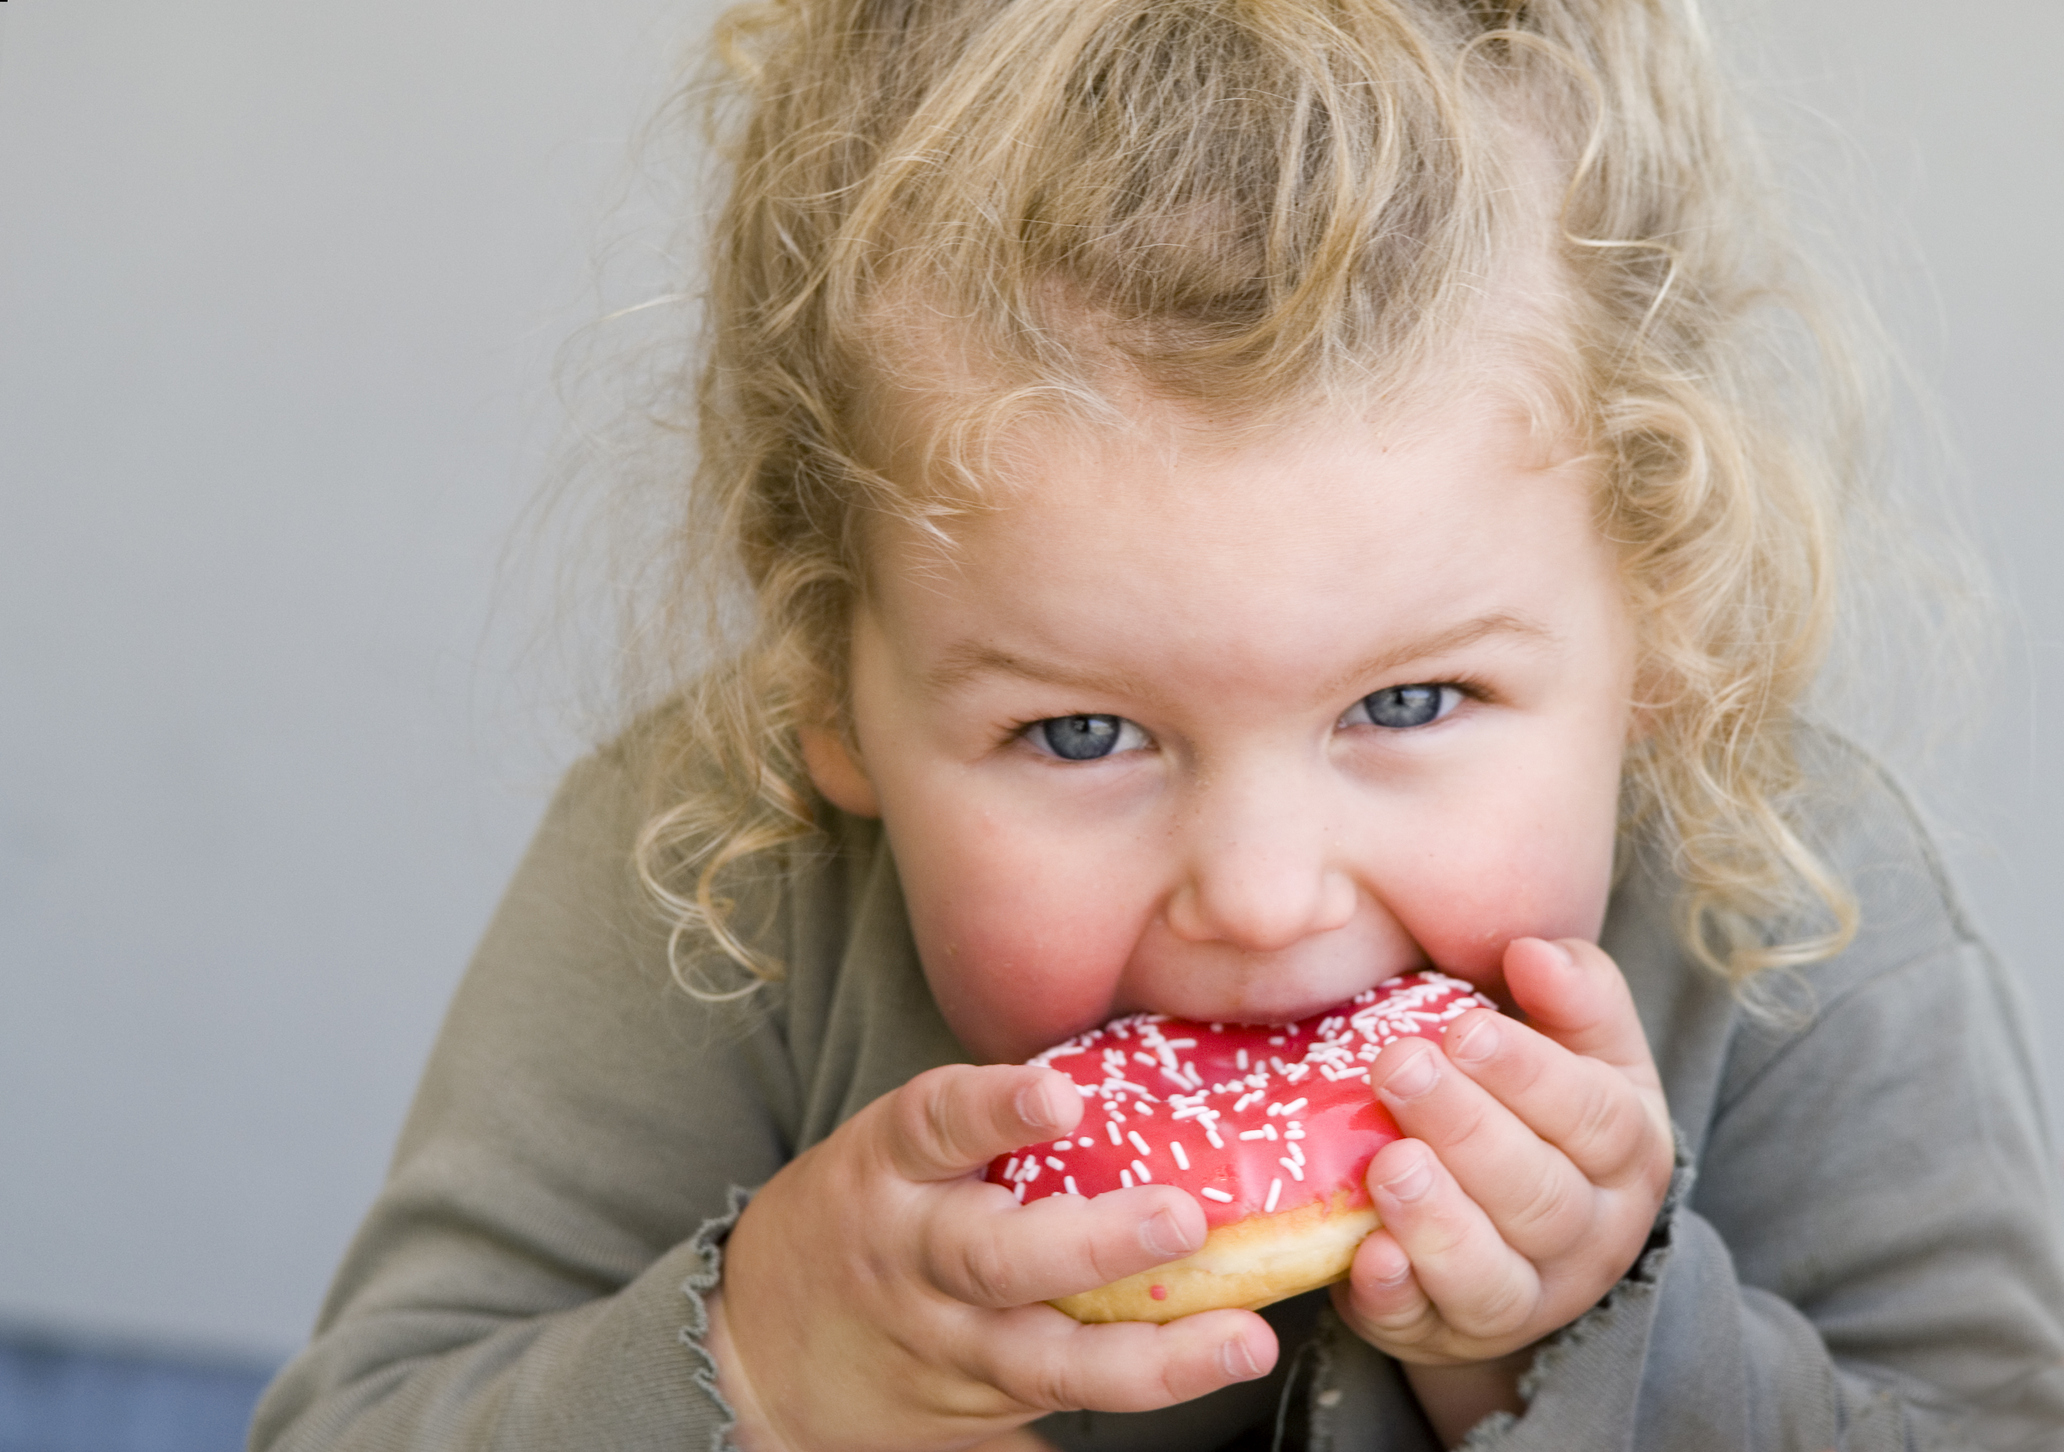 μύθος ότι η υπερβολική κατανάλωση ζάχαρης κάνει τα παιδιά υπερκινητικά